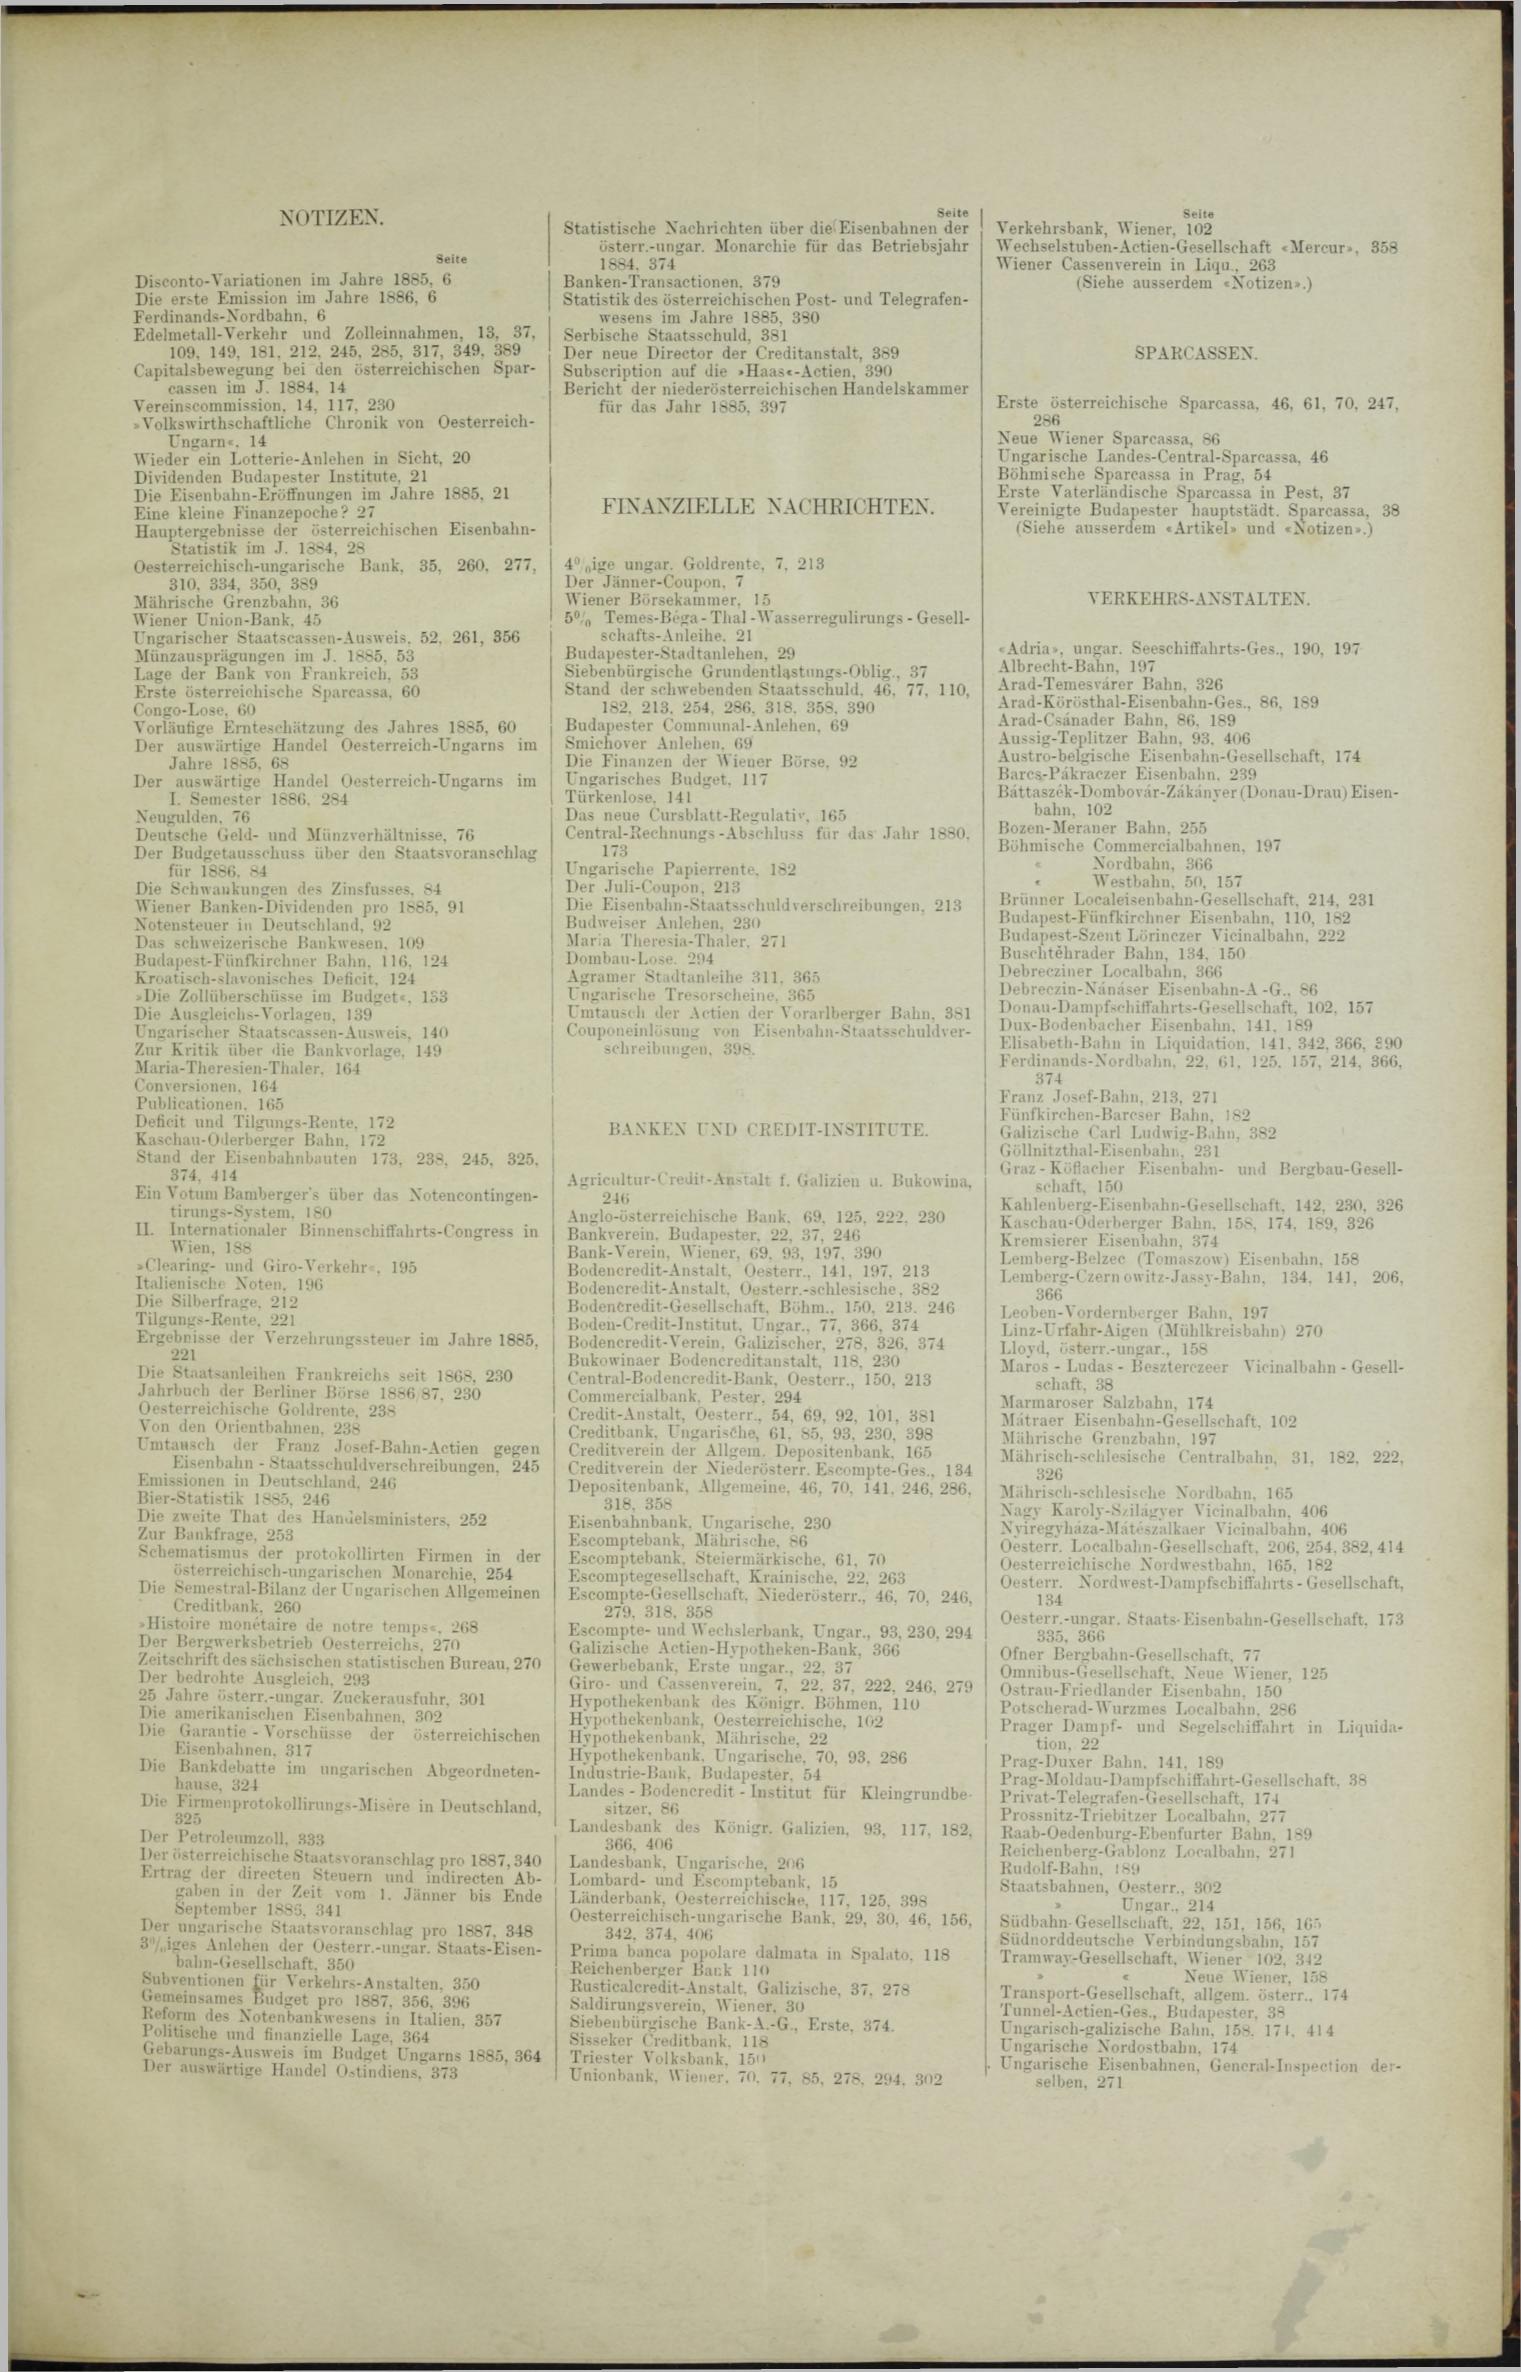 Der Tresor 05.08.1886 - Seite 11